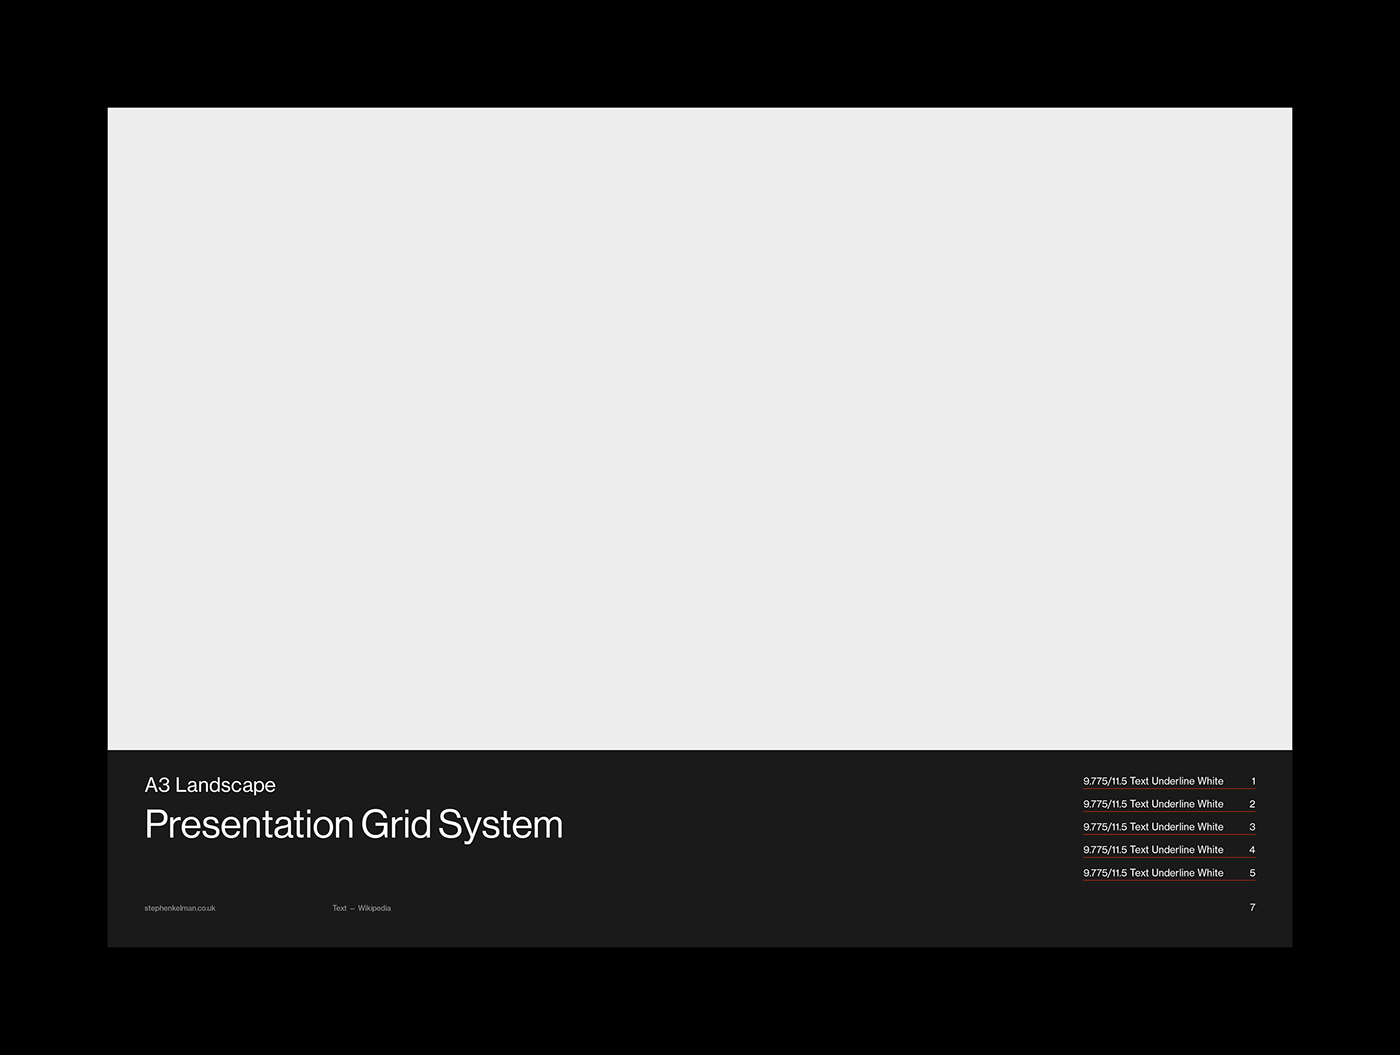 Alternative cover design for A3 presentation grid system – black background